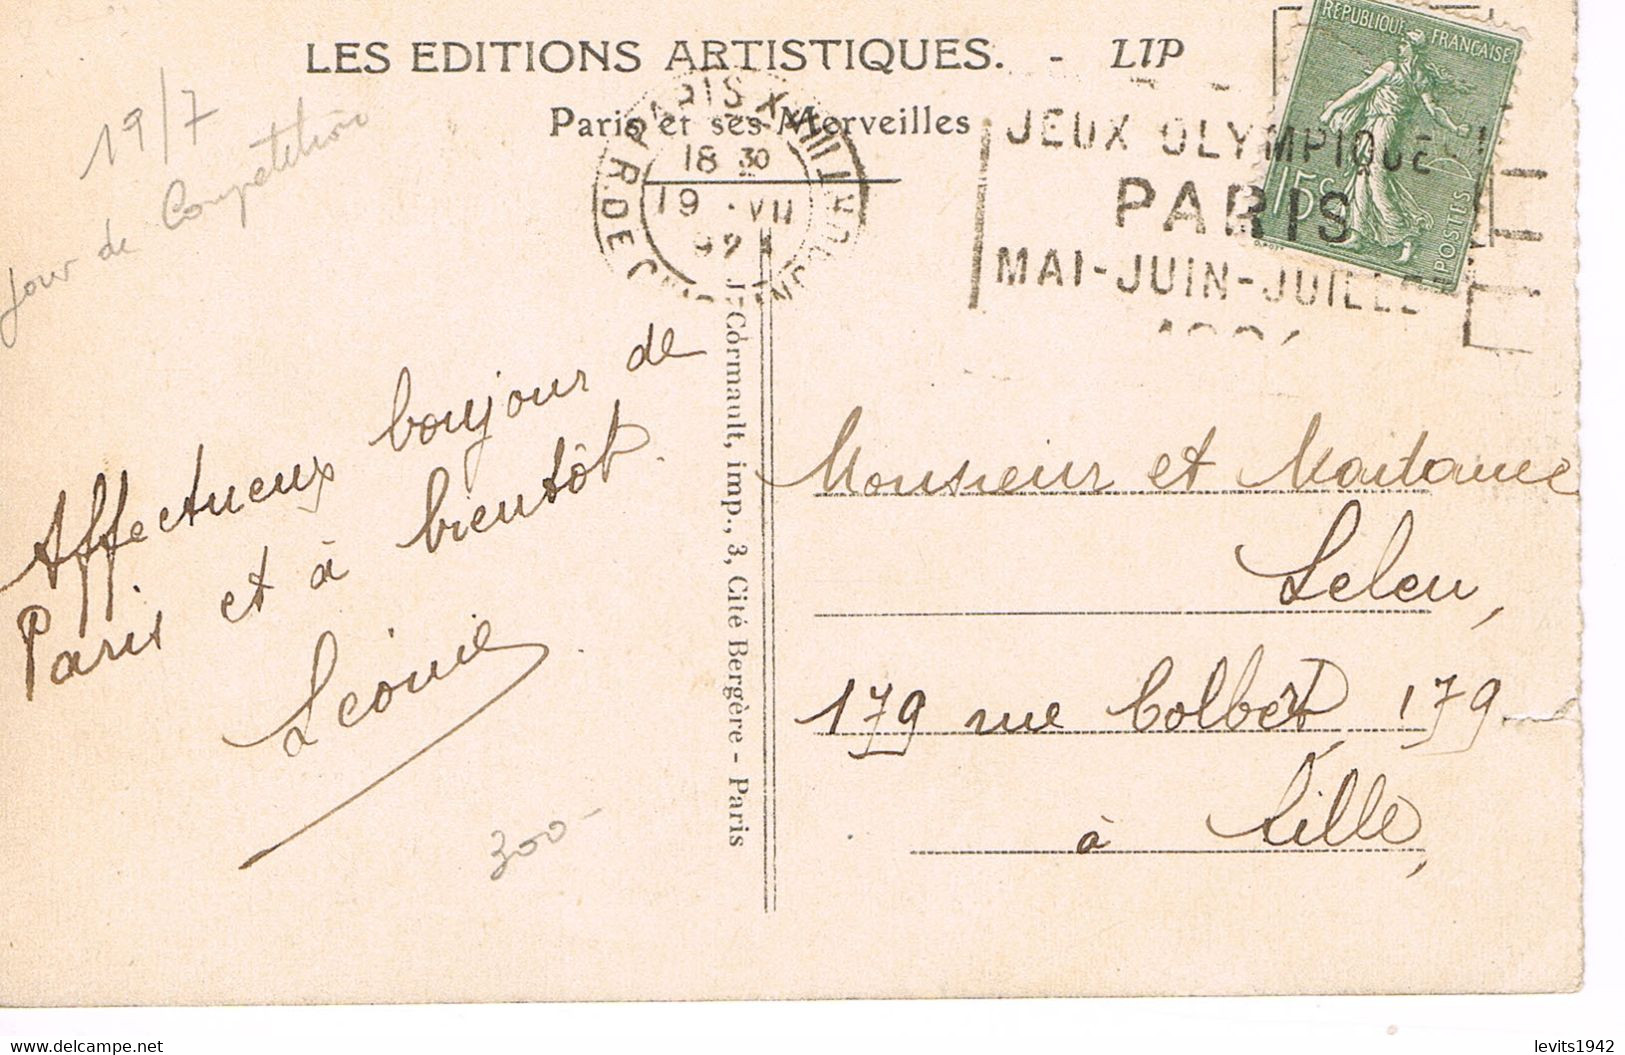 JEUX OLYMPIQUES 1924 -  MARQUE POSTALE - GYMNASTIQUE - TENNIS -NATATION - BOXE - JOUR DE COMPETITION - 19-07 - - Sommer 1924: Paris